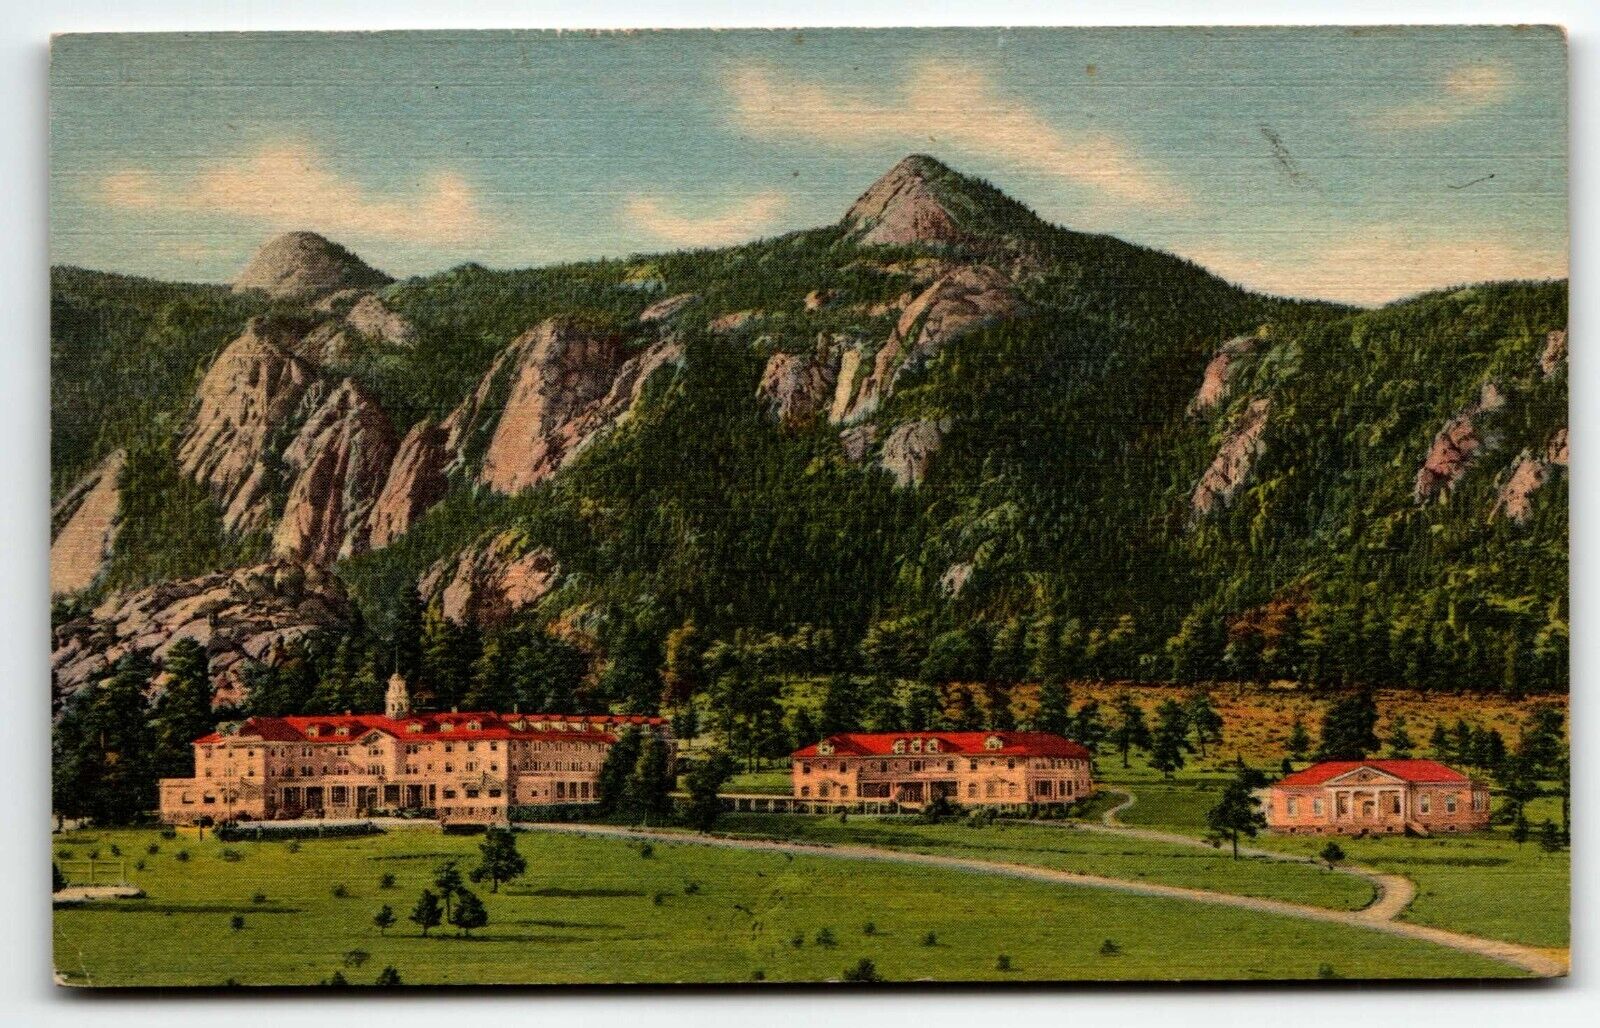 Stanley Hotel Linen Postcard Estes Park Colorado CO UNP Rocky Mountains